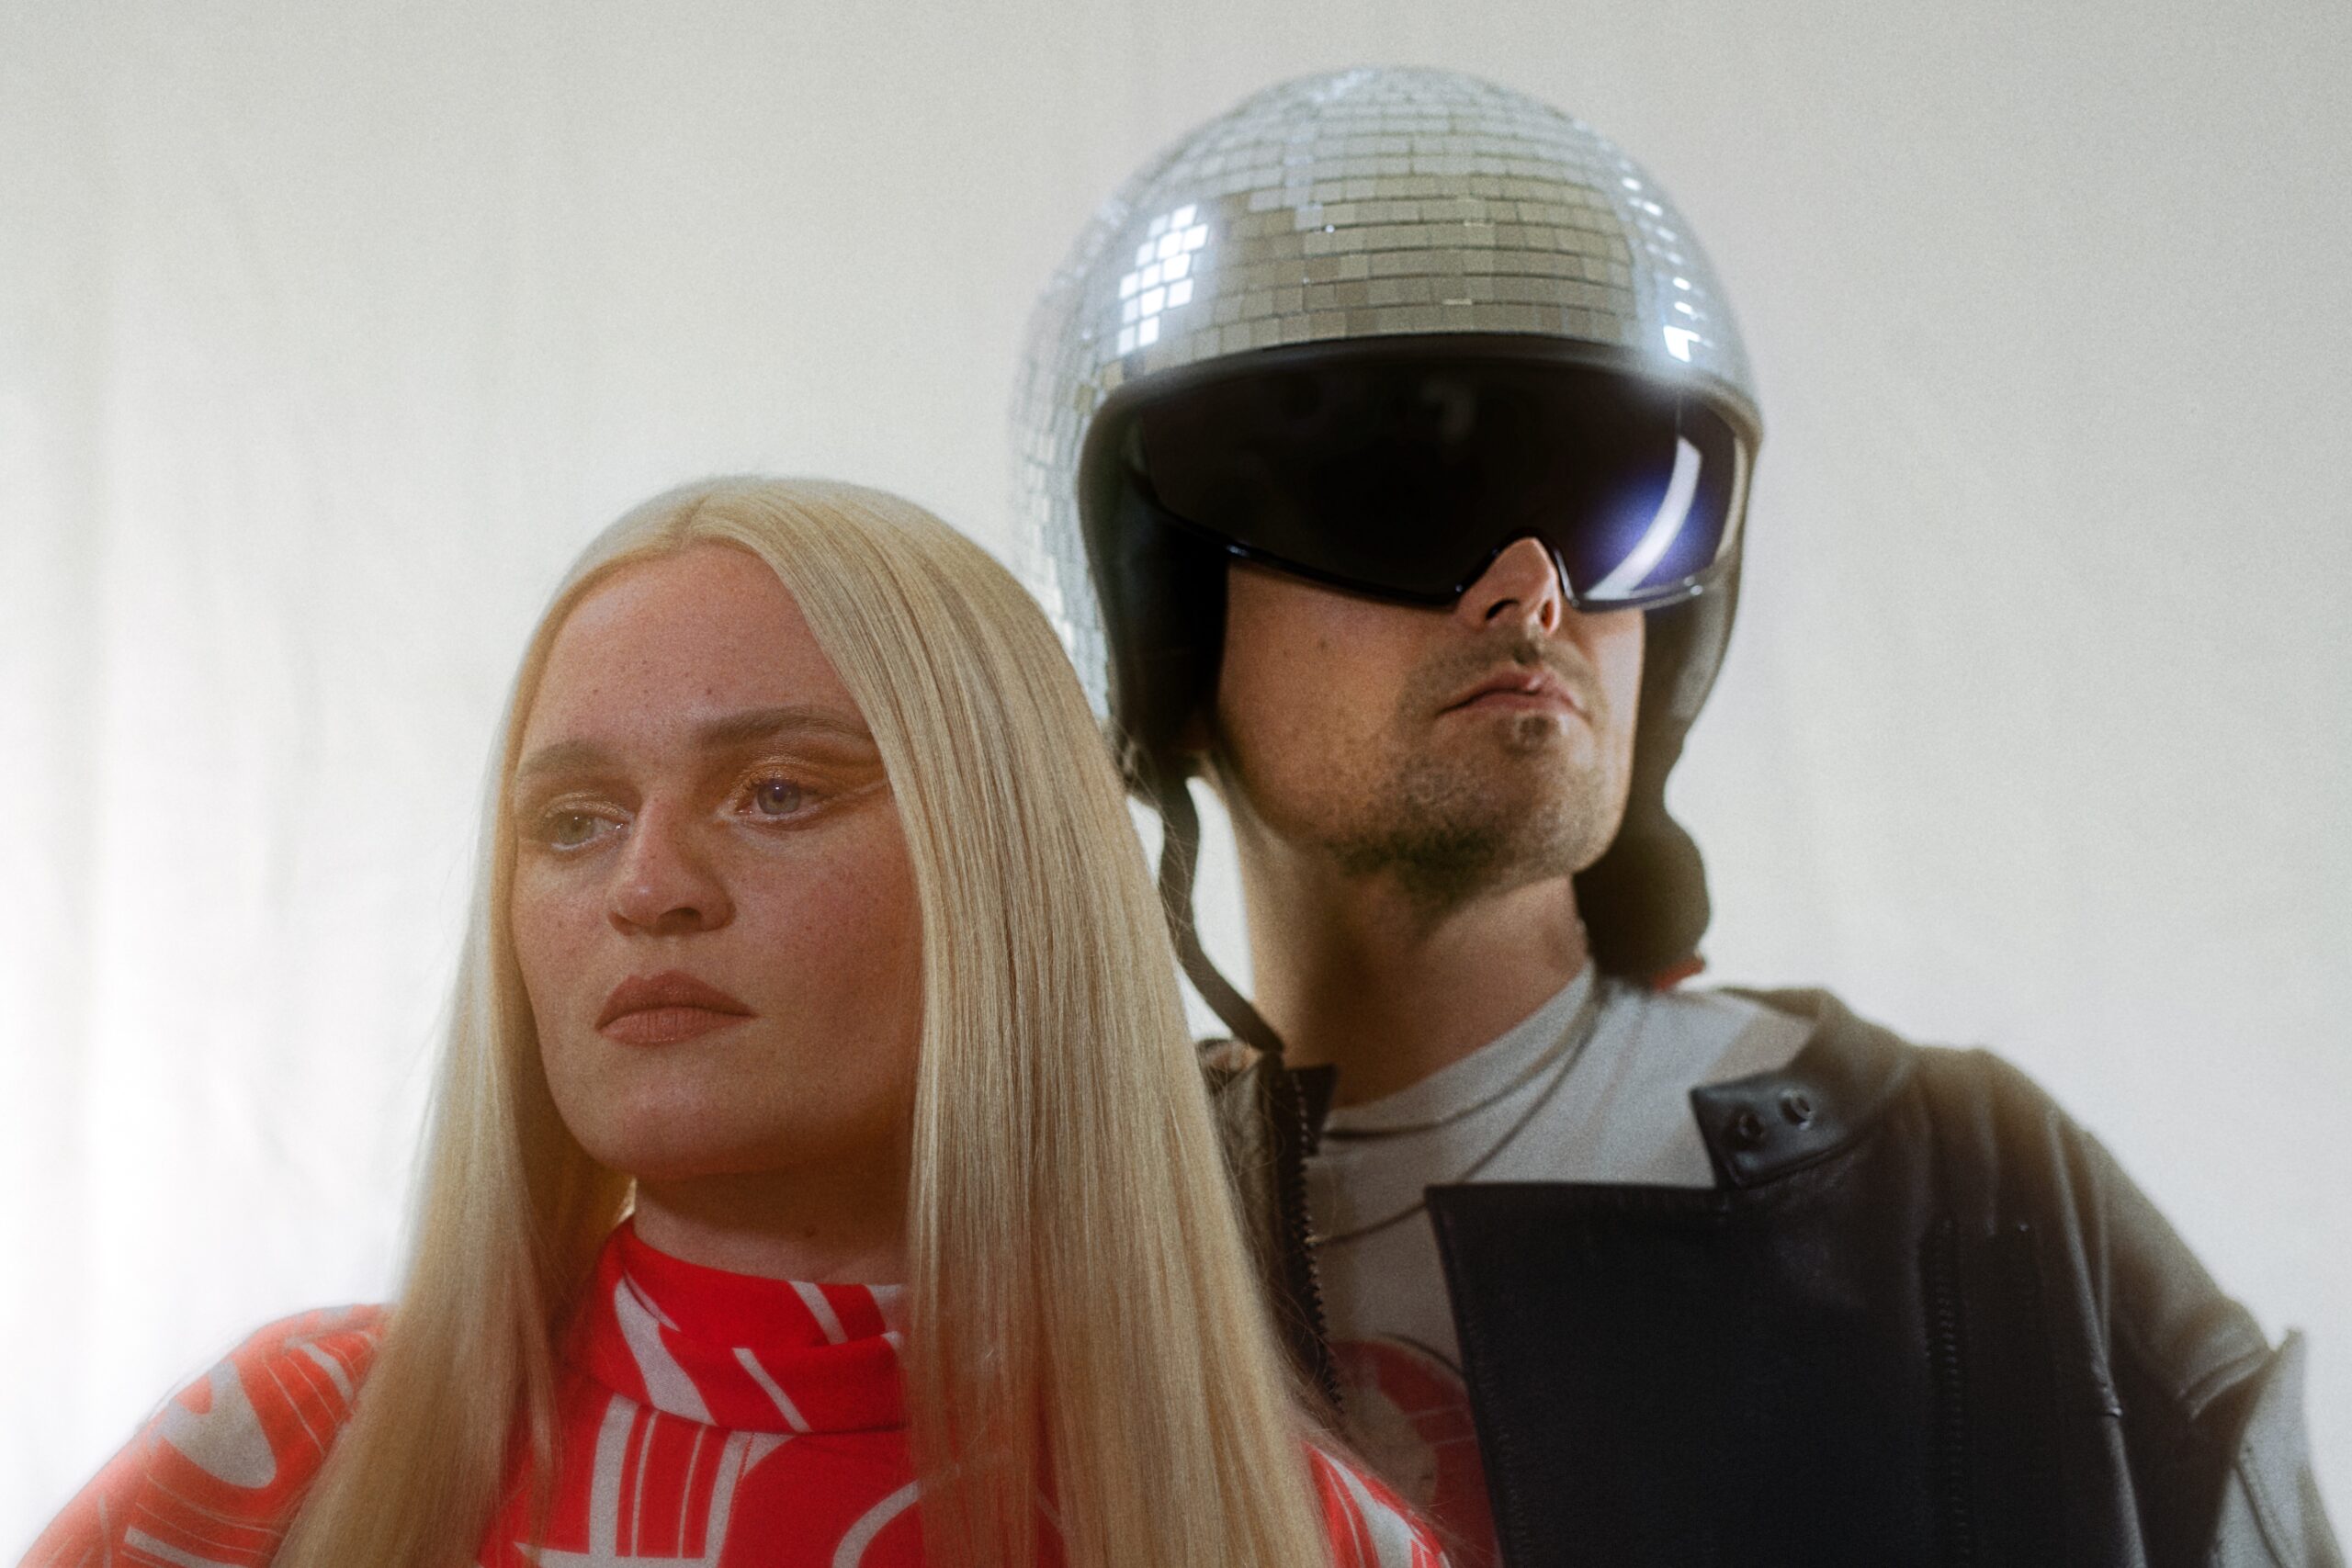 Die beiden stehen eng nebeneinander, Inéz blickt ernst, Demian trägt eine riesige Sonnenbrille und einen Helm, der wie eine Diskokugel aussieht.